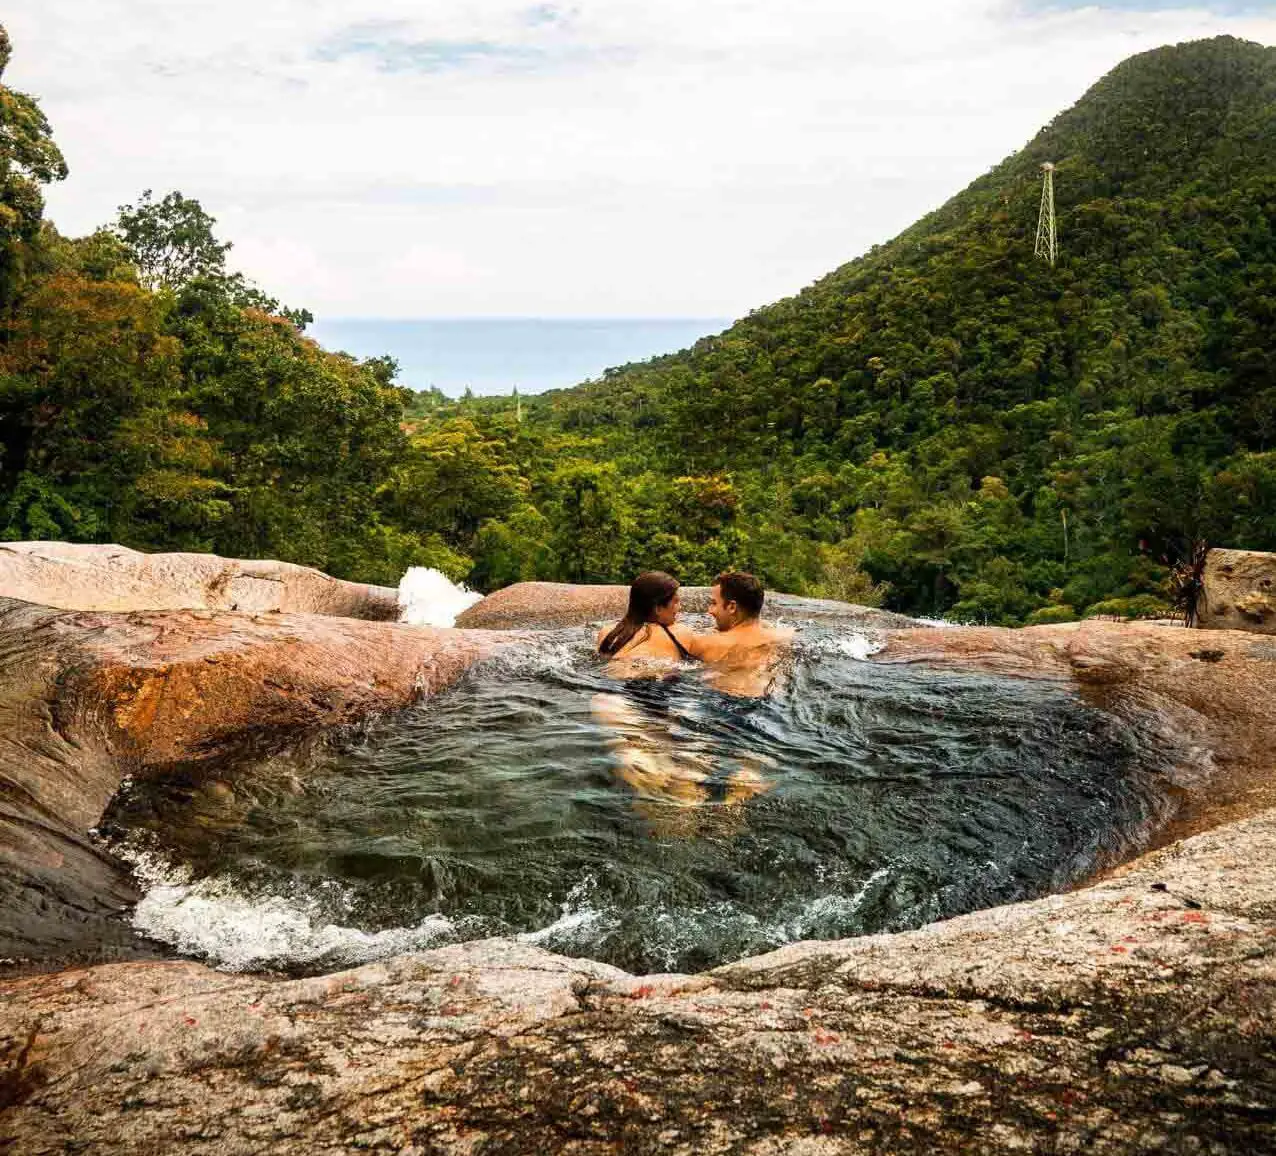 Gaze At The Seven Well Waterfalls: Thác nước Telaga Tujuh chắc chắn là một trong những điểm du lịch tuyệt đẹp và ấn tượng nhất của Langkawi. Đặc điểm tự nhiên tuyệt vời này, được tạo thành từ một số hồ tự nhiên, có thể được tìm thấy ở khu vực phía tây bắc của hòn đảo. Những thành tạo này có nguồn gốc từ một đỉnh duy nhất, Núi Mag Cincang, bởi bảy thác nước riêng biệt. Phong cảnh thanh tao và tuyệt đẹp của Telaga Tujuh đã khiến nơi đây được người dân địa phương đặt biệt danh là “vùng đất của các nàng tiên”. Khi bạn ở đây, hãy tận hưởng phong cảnh từ hai đài quan sát hoặc đi bơi trong nước.